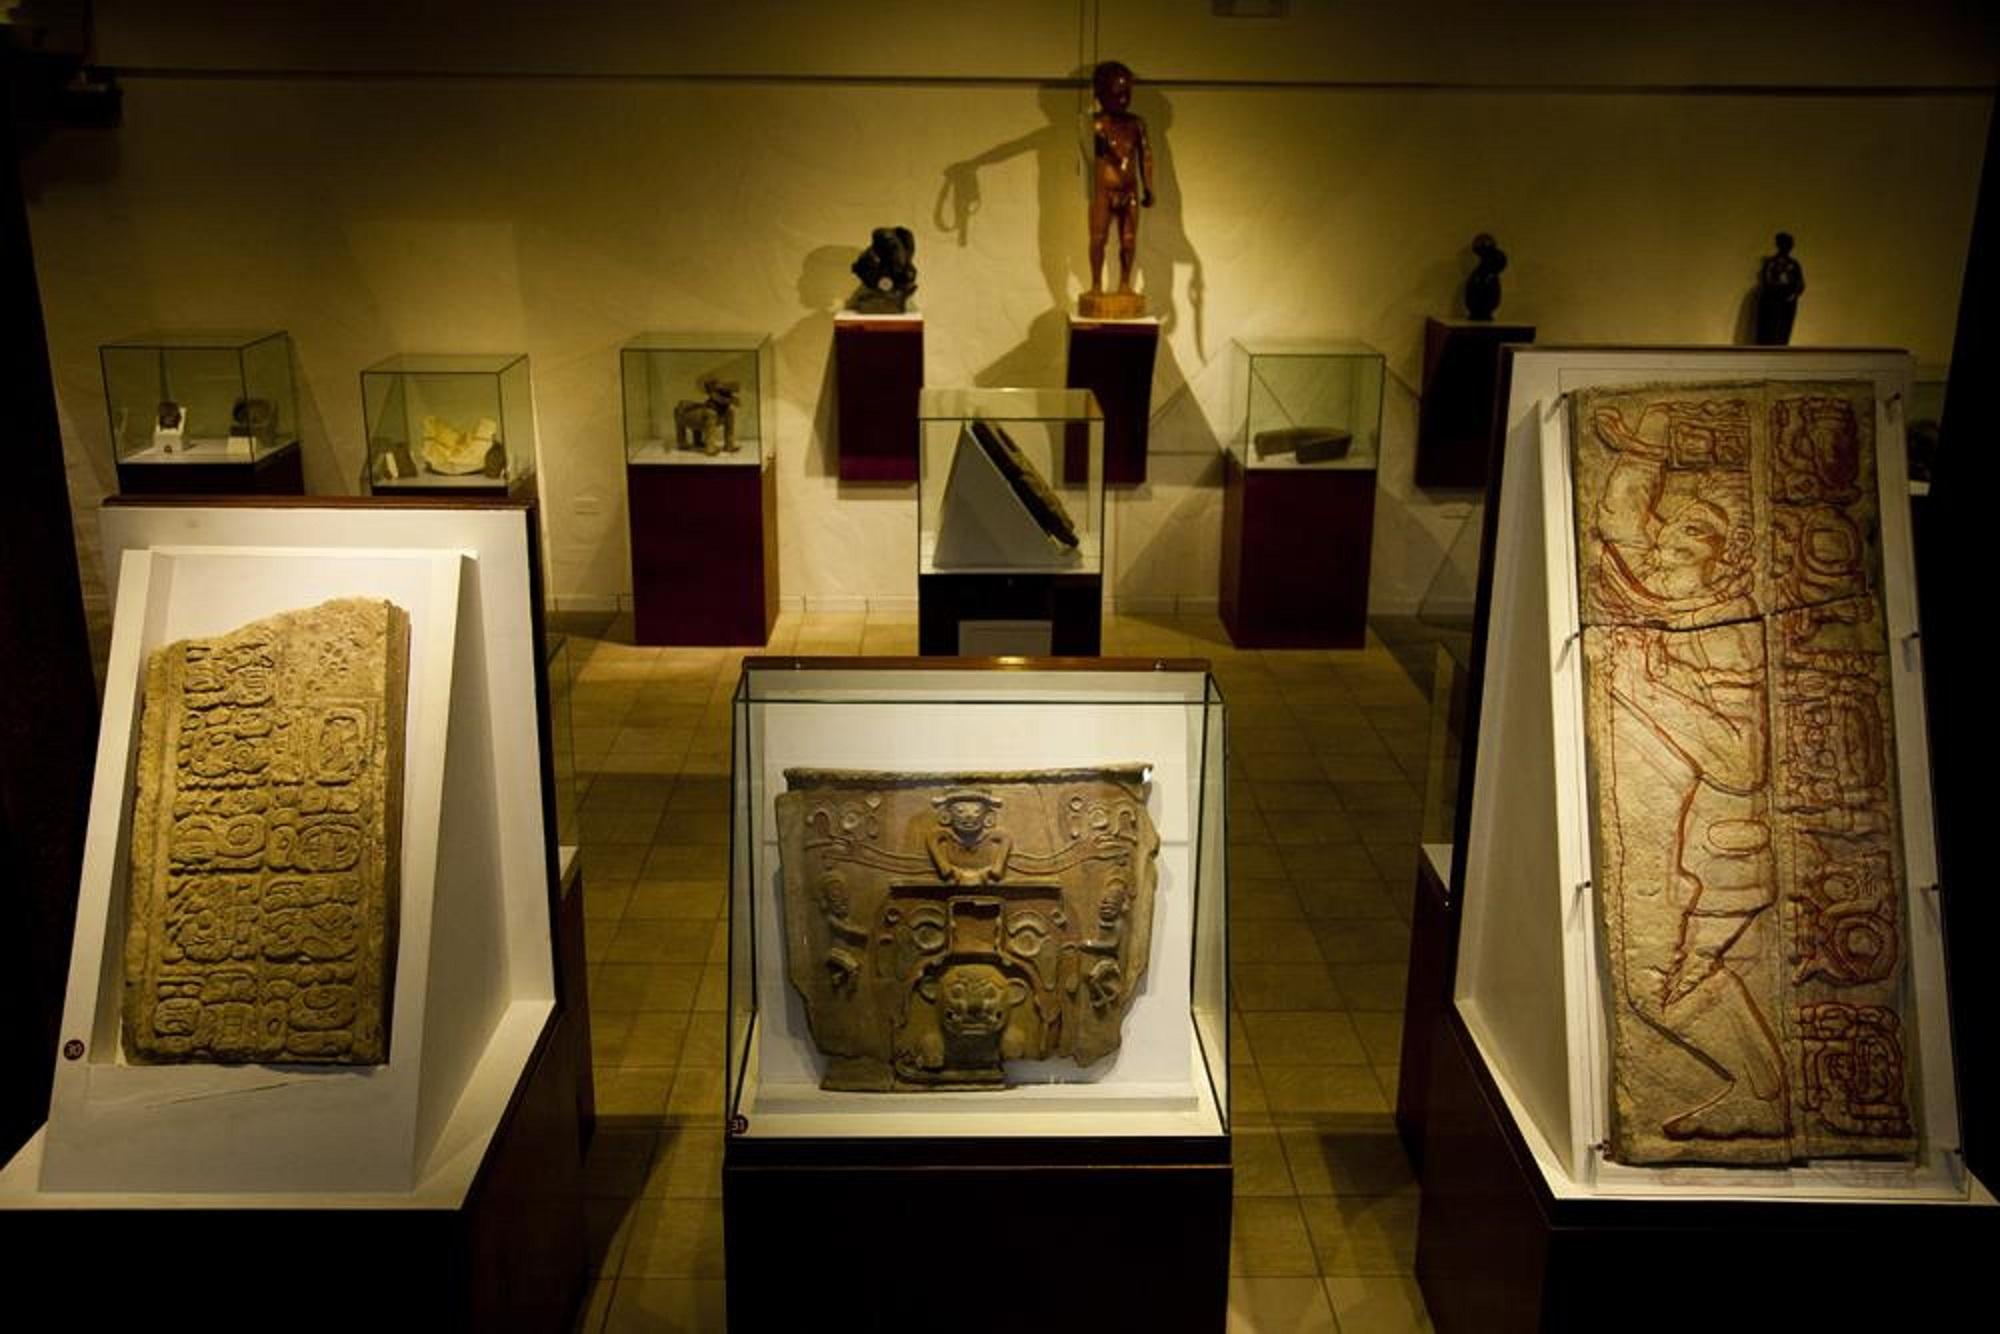 Las piezas de los extremos son los fragmentos de estela depredados de los sitios arqueológicos guatemaltecos Aguateca y Dos Pilas, respectivamente, y expuestos en el museo Tesak.